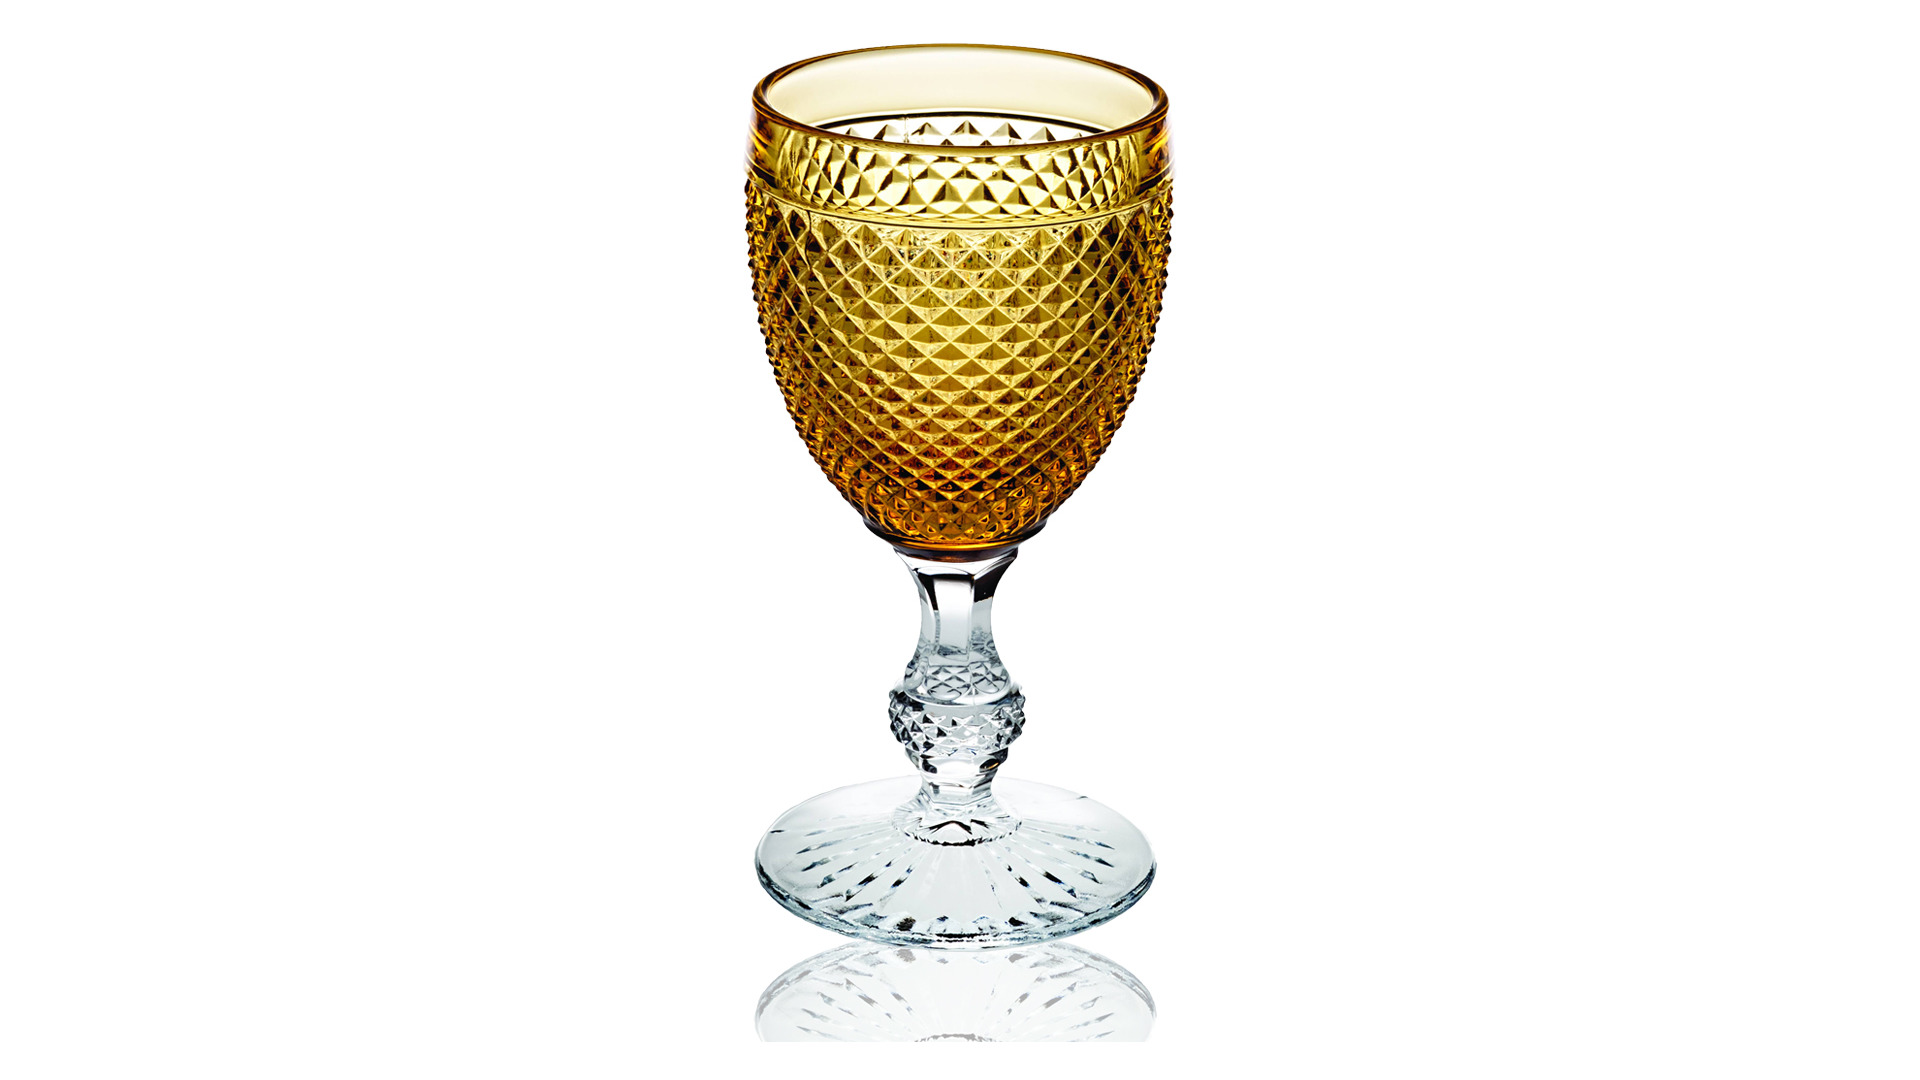 Набор бокалов для вина Vista Alegre Бикош 280 мл, 2 шт, янтарная ножка+янтарная чаша